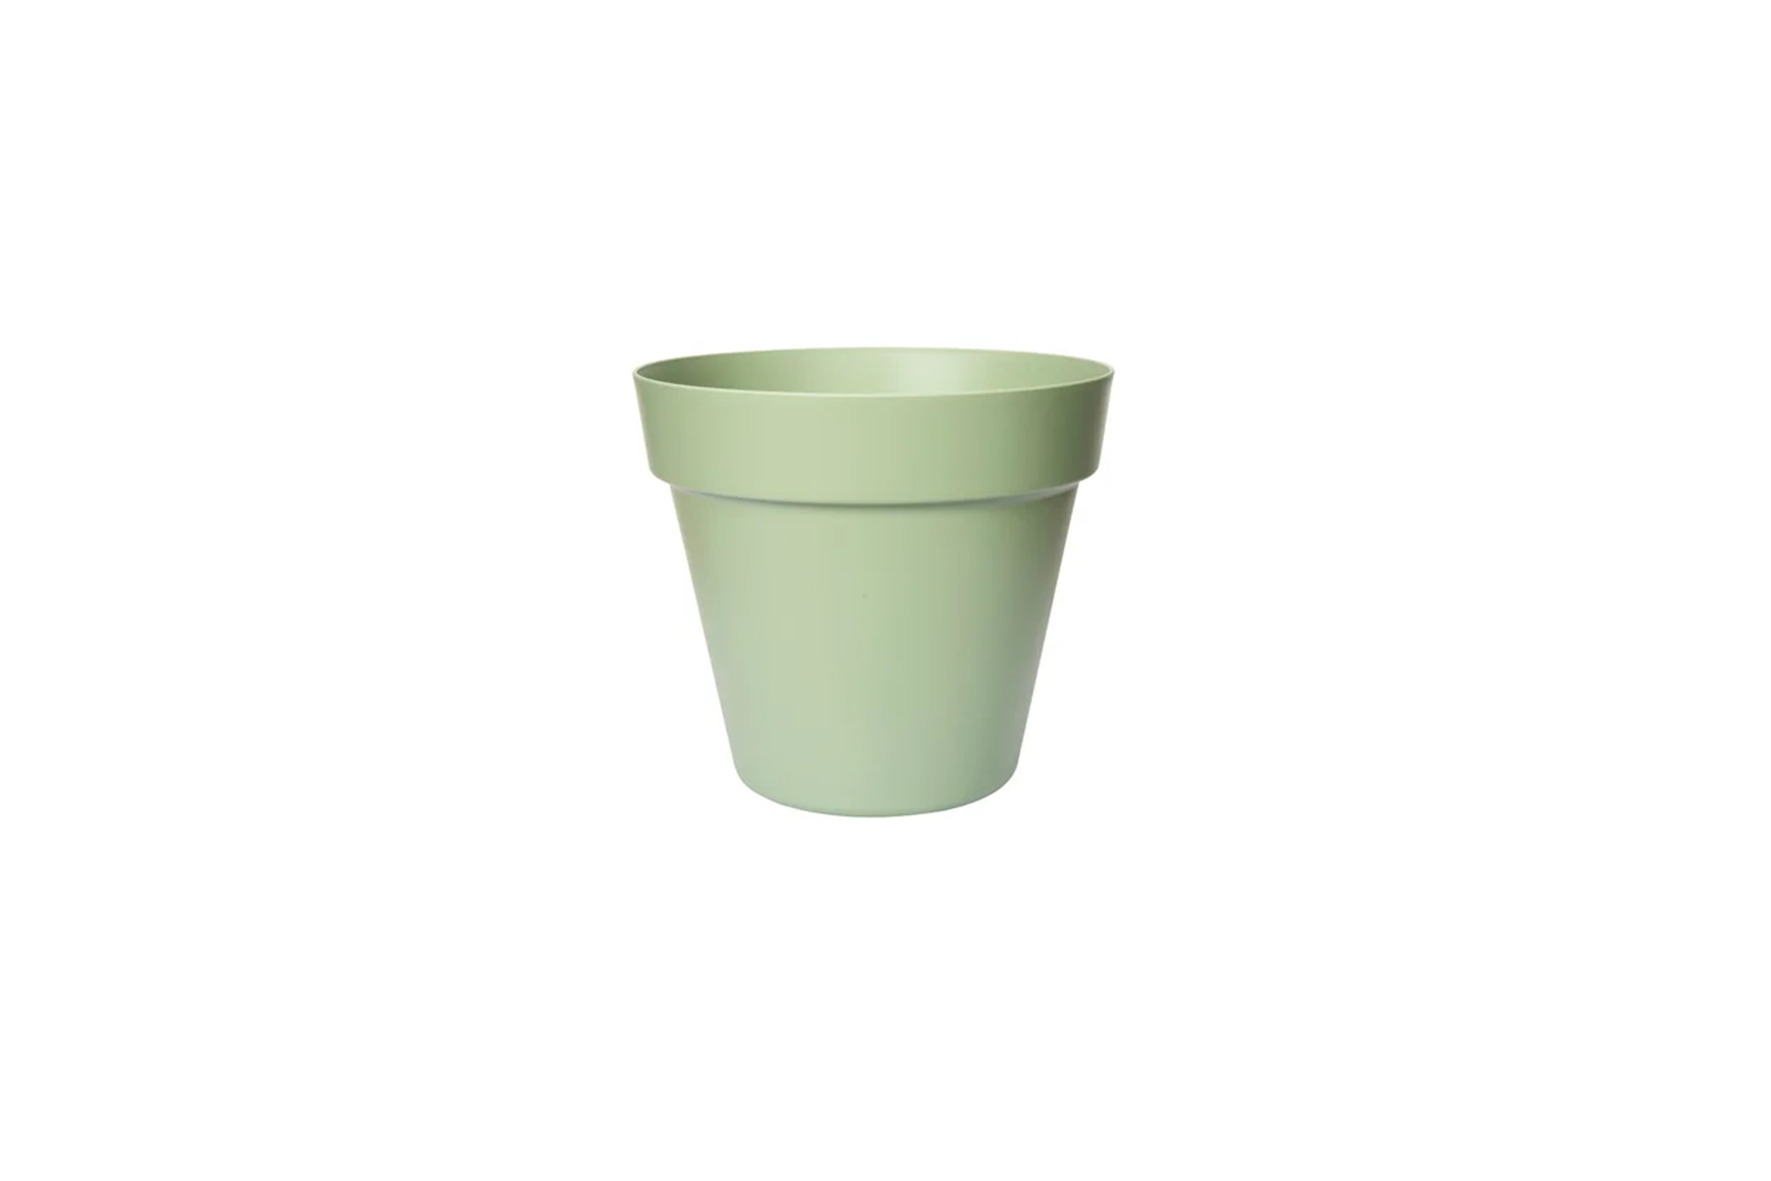 Bloempot | Mint groen Ø19,5xH17,5